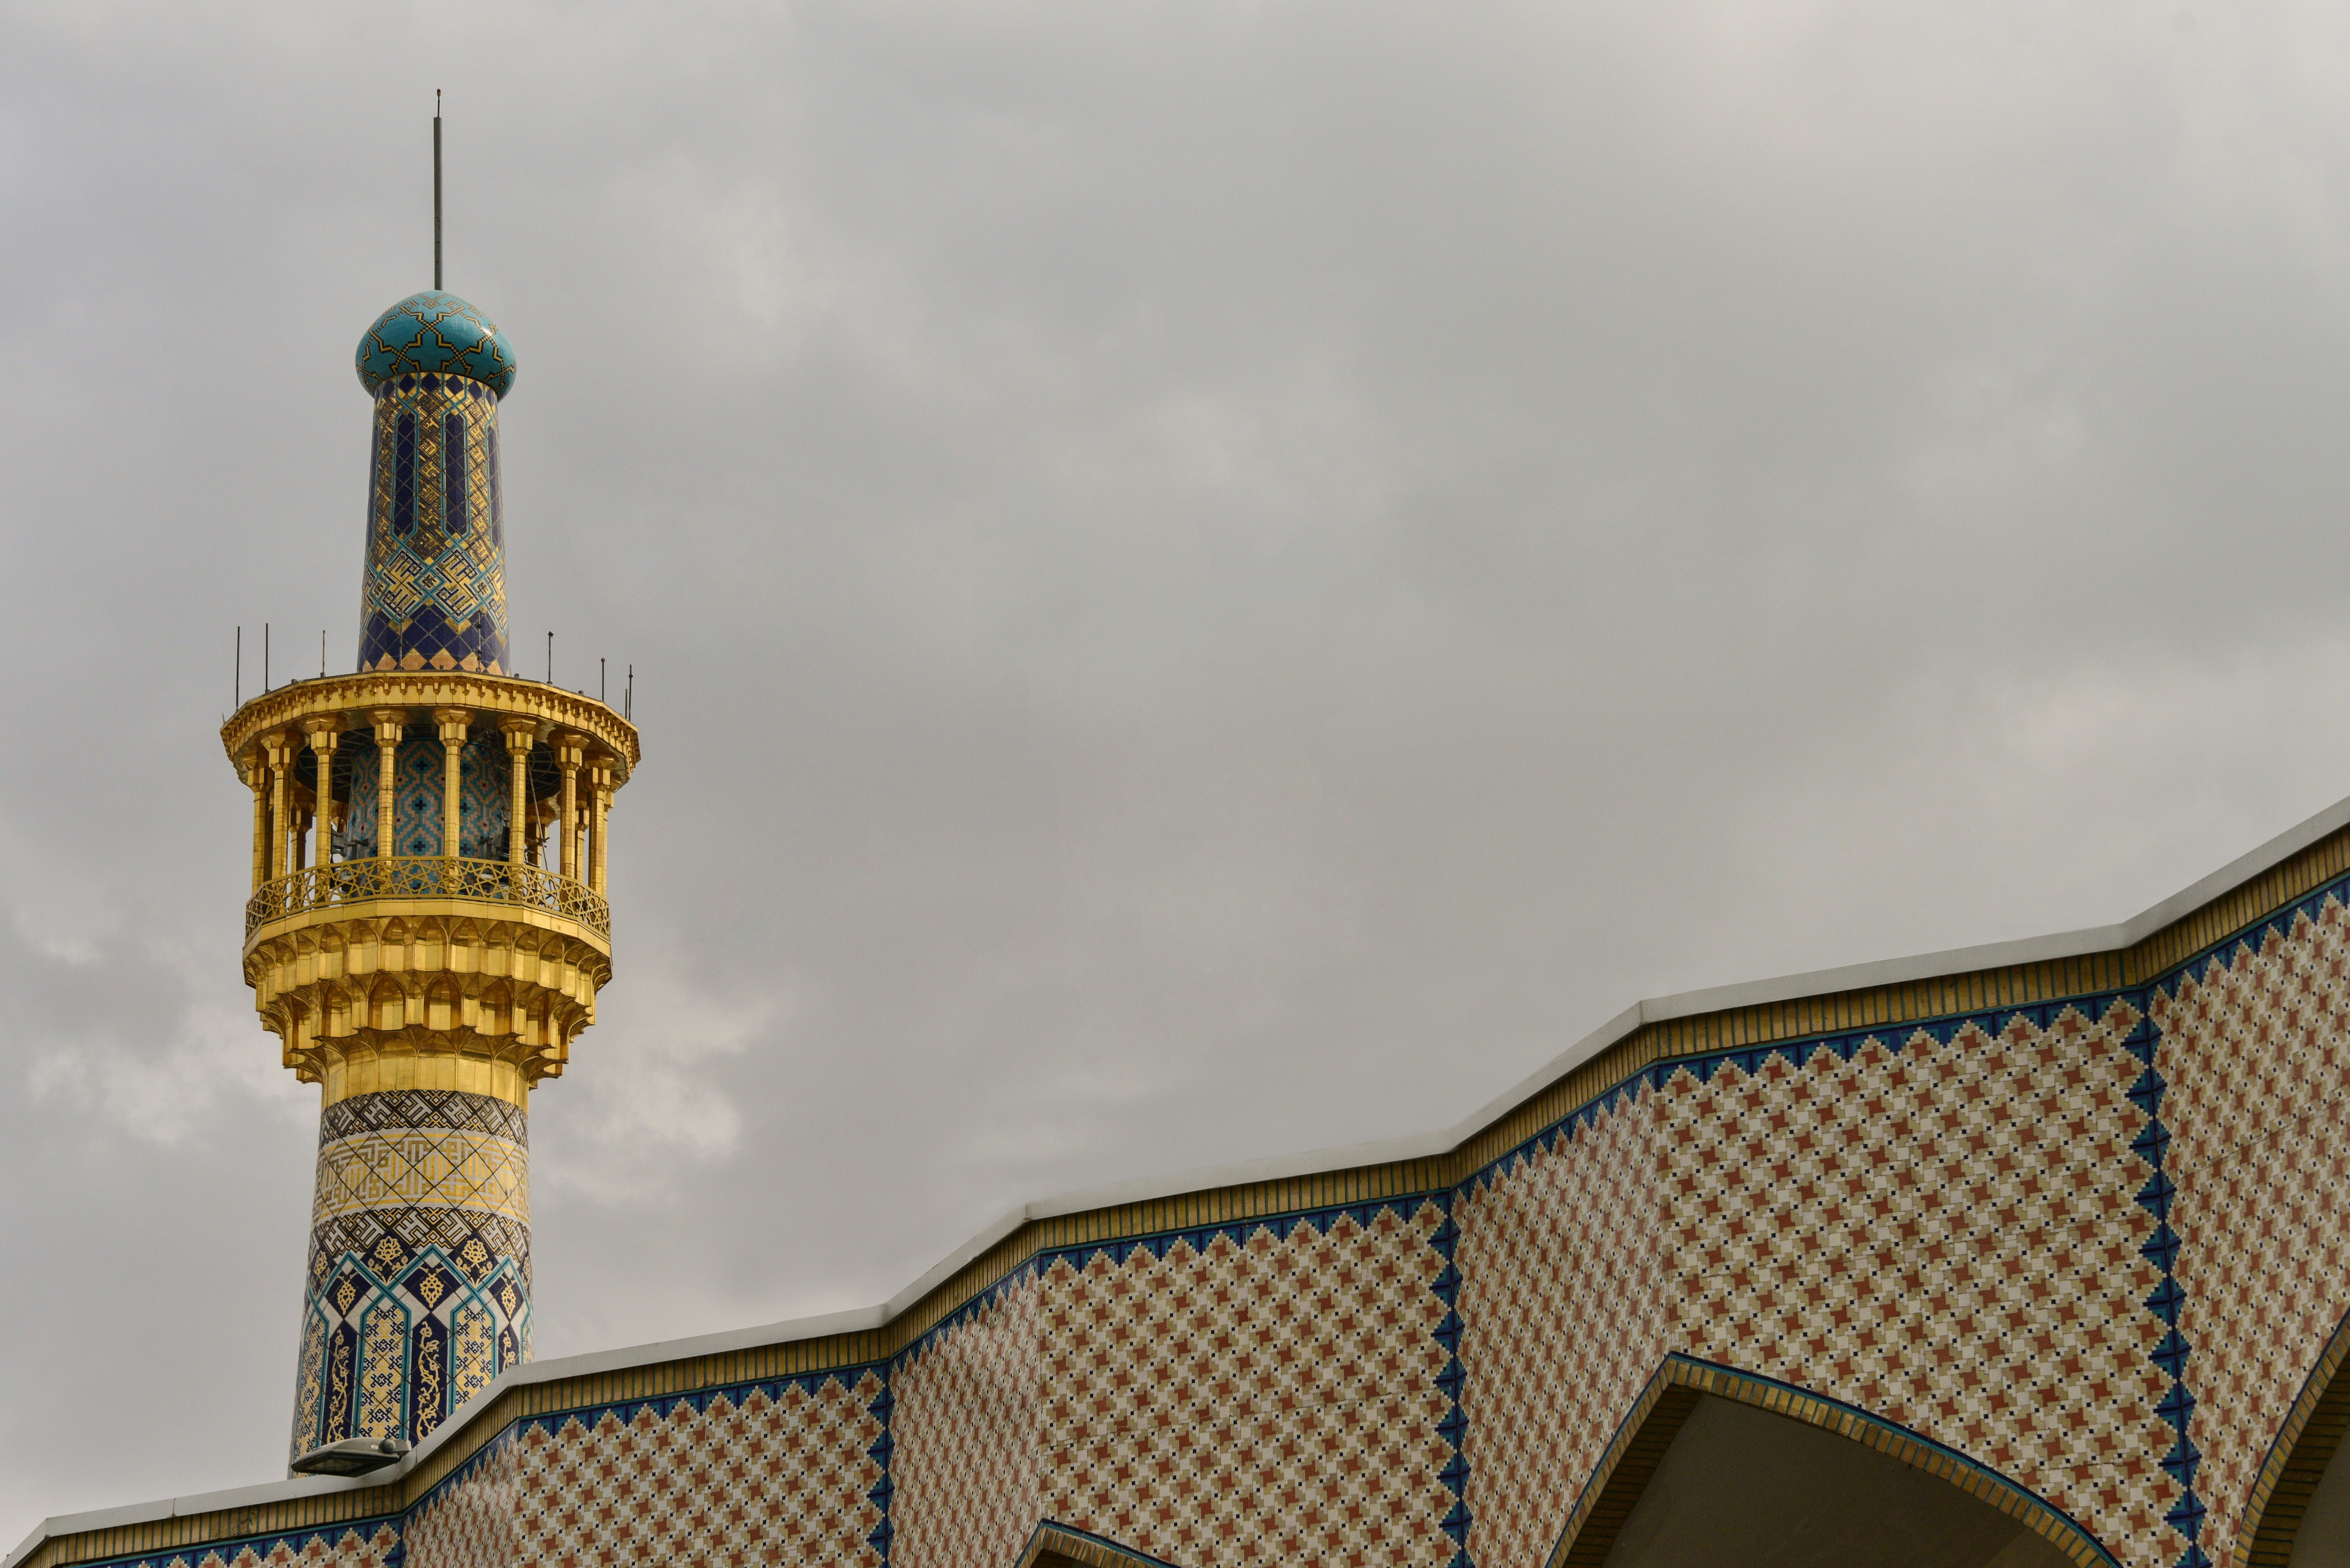 découvrez mashhad, une ville historique d'iran célèbre pour son sanctuaire de l'imam reza, ses merveilles architecturales et sa riche culture persane.